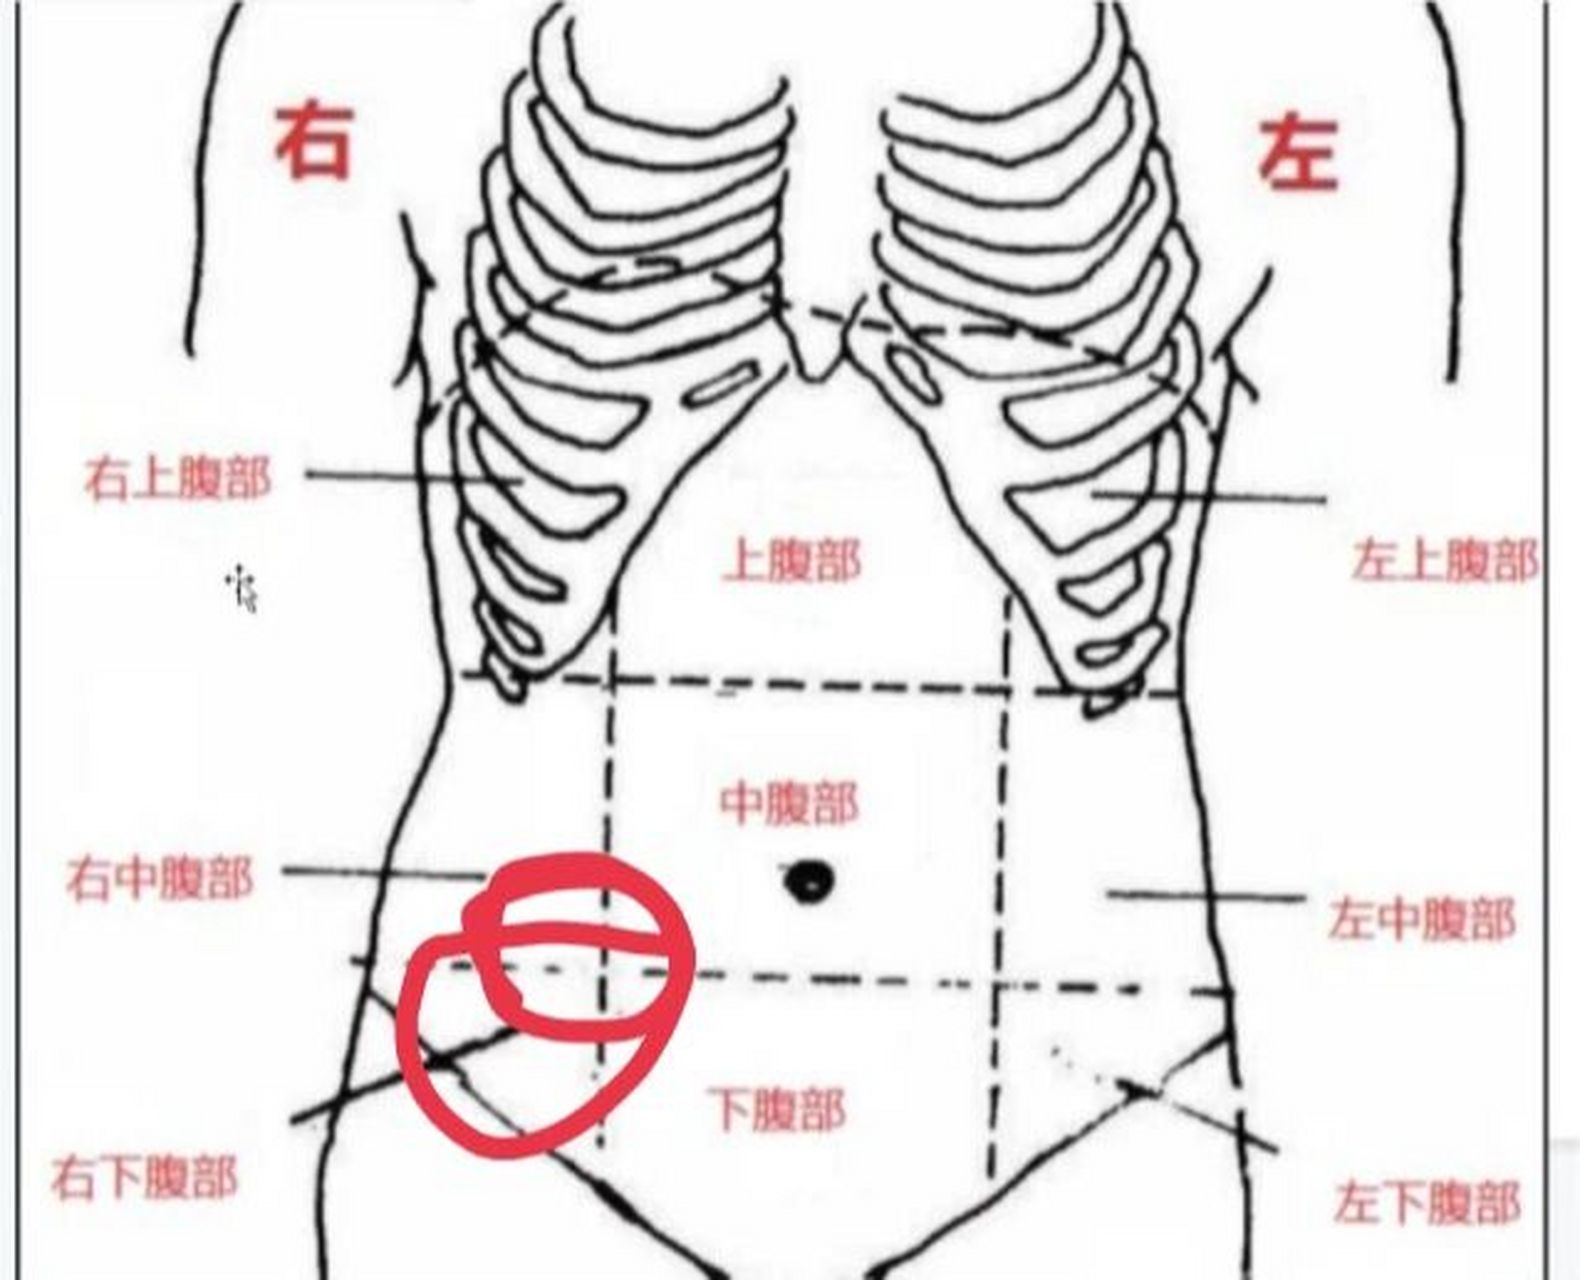 腹部右侧疼痛位置图图片